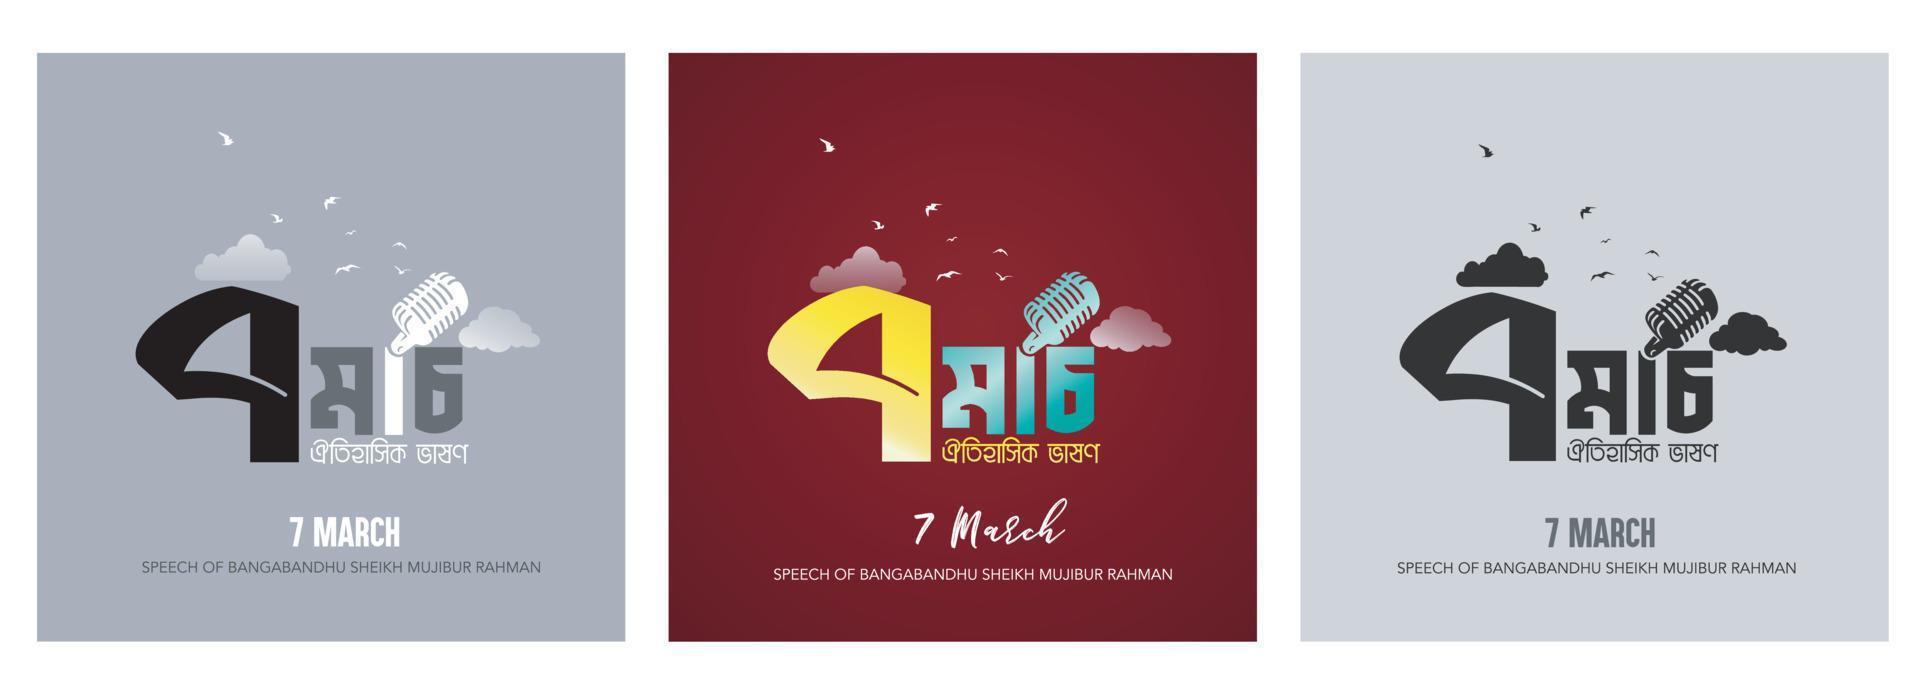 7 maart toespraak van bangabandhu sjeik mujibur rahman bangla vector typografie en schoonschrift ontwerp voor bangladesh. inhoudsopgave vinger verheven toespraak